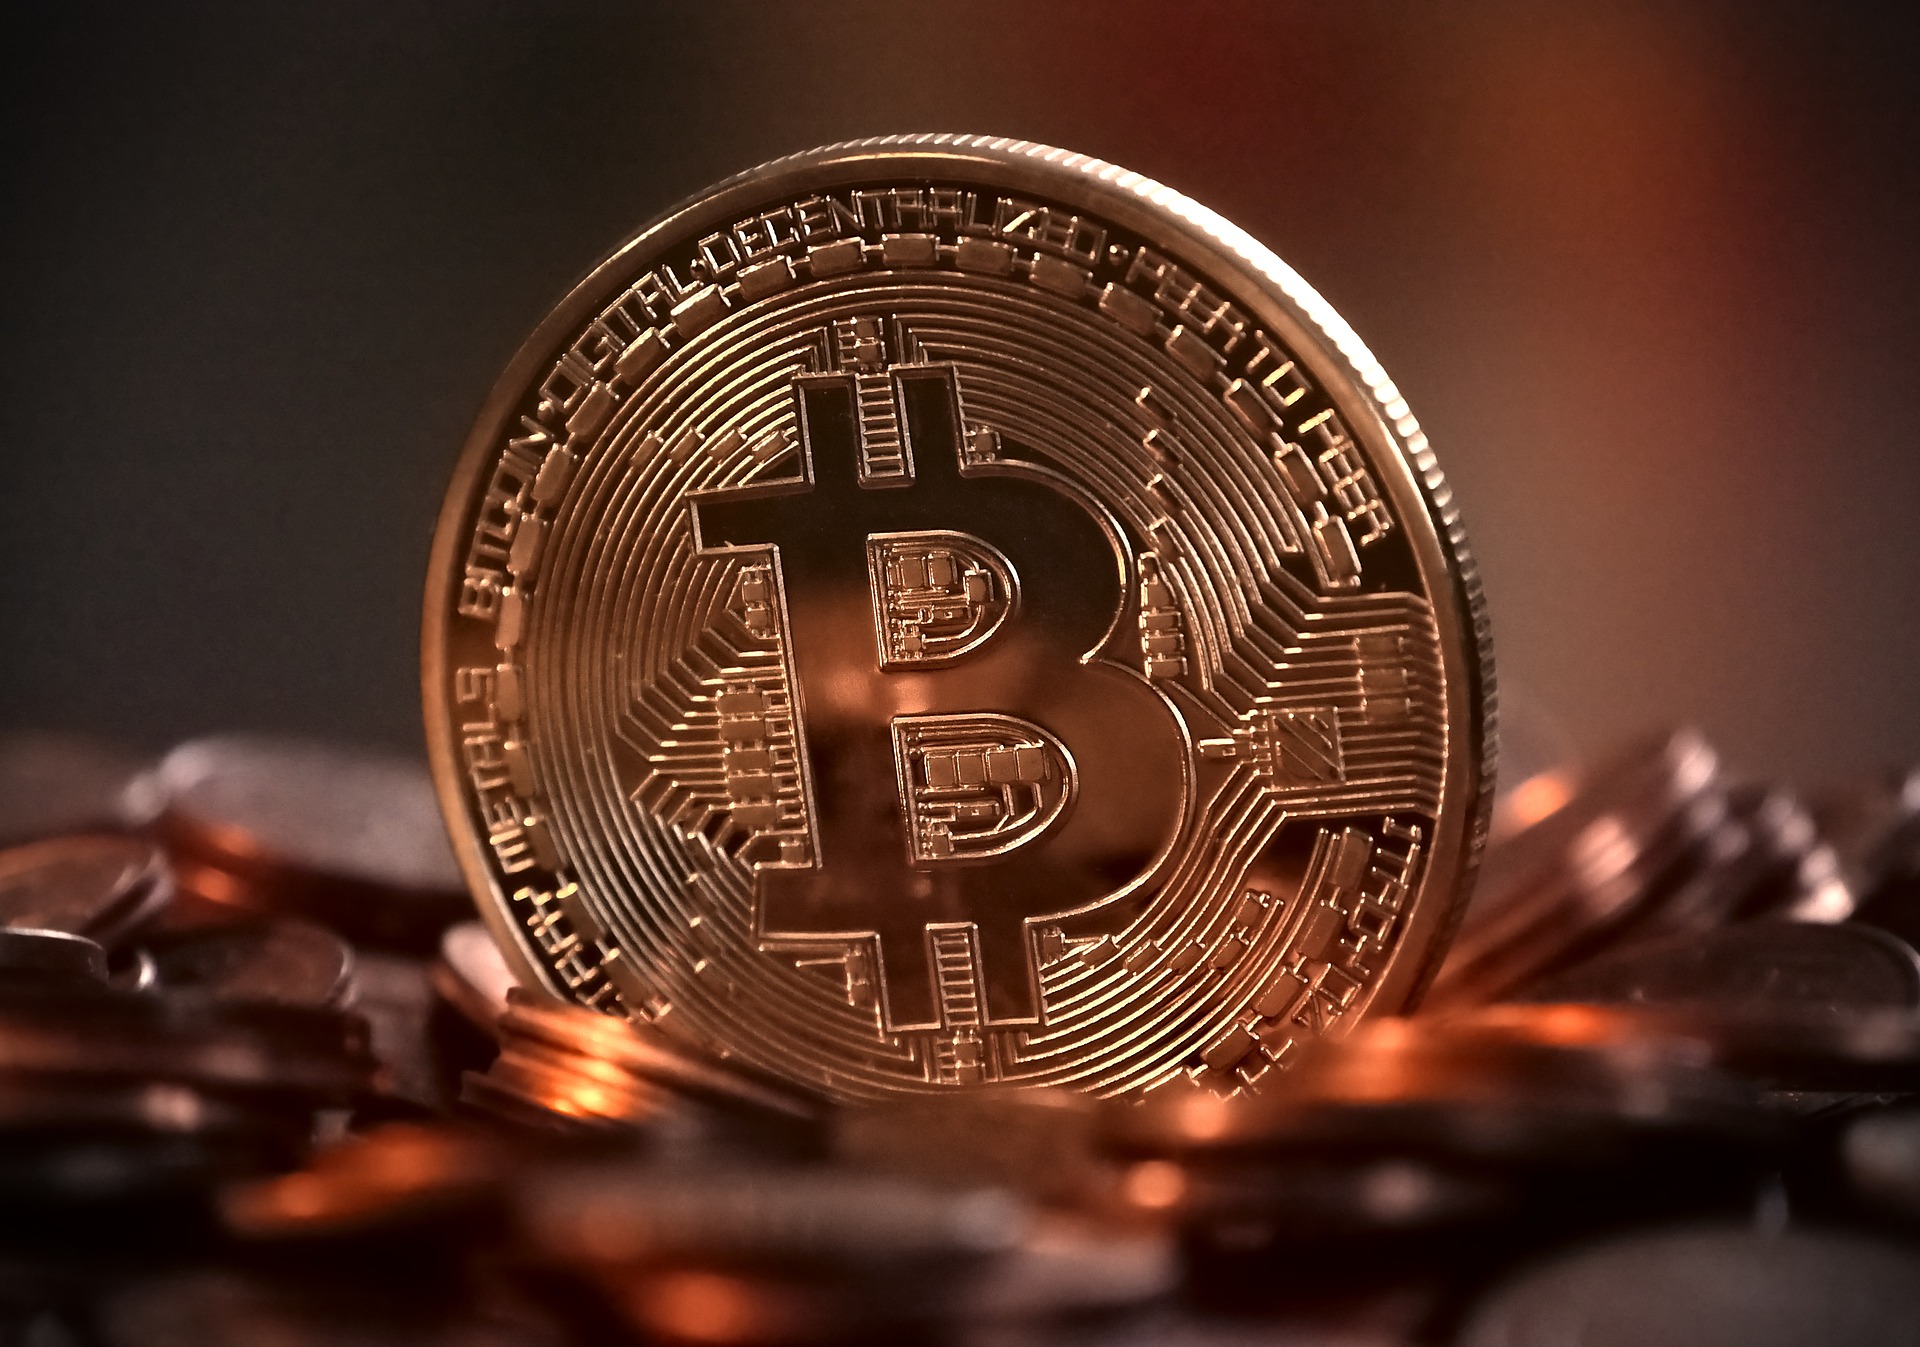 investiere in bitcoin und verdiene täglich